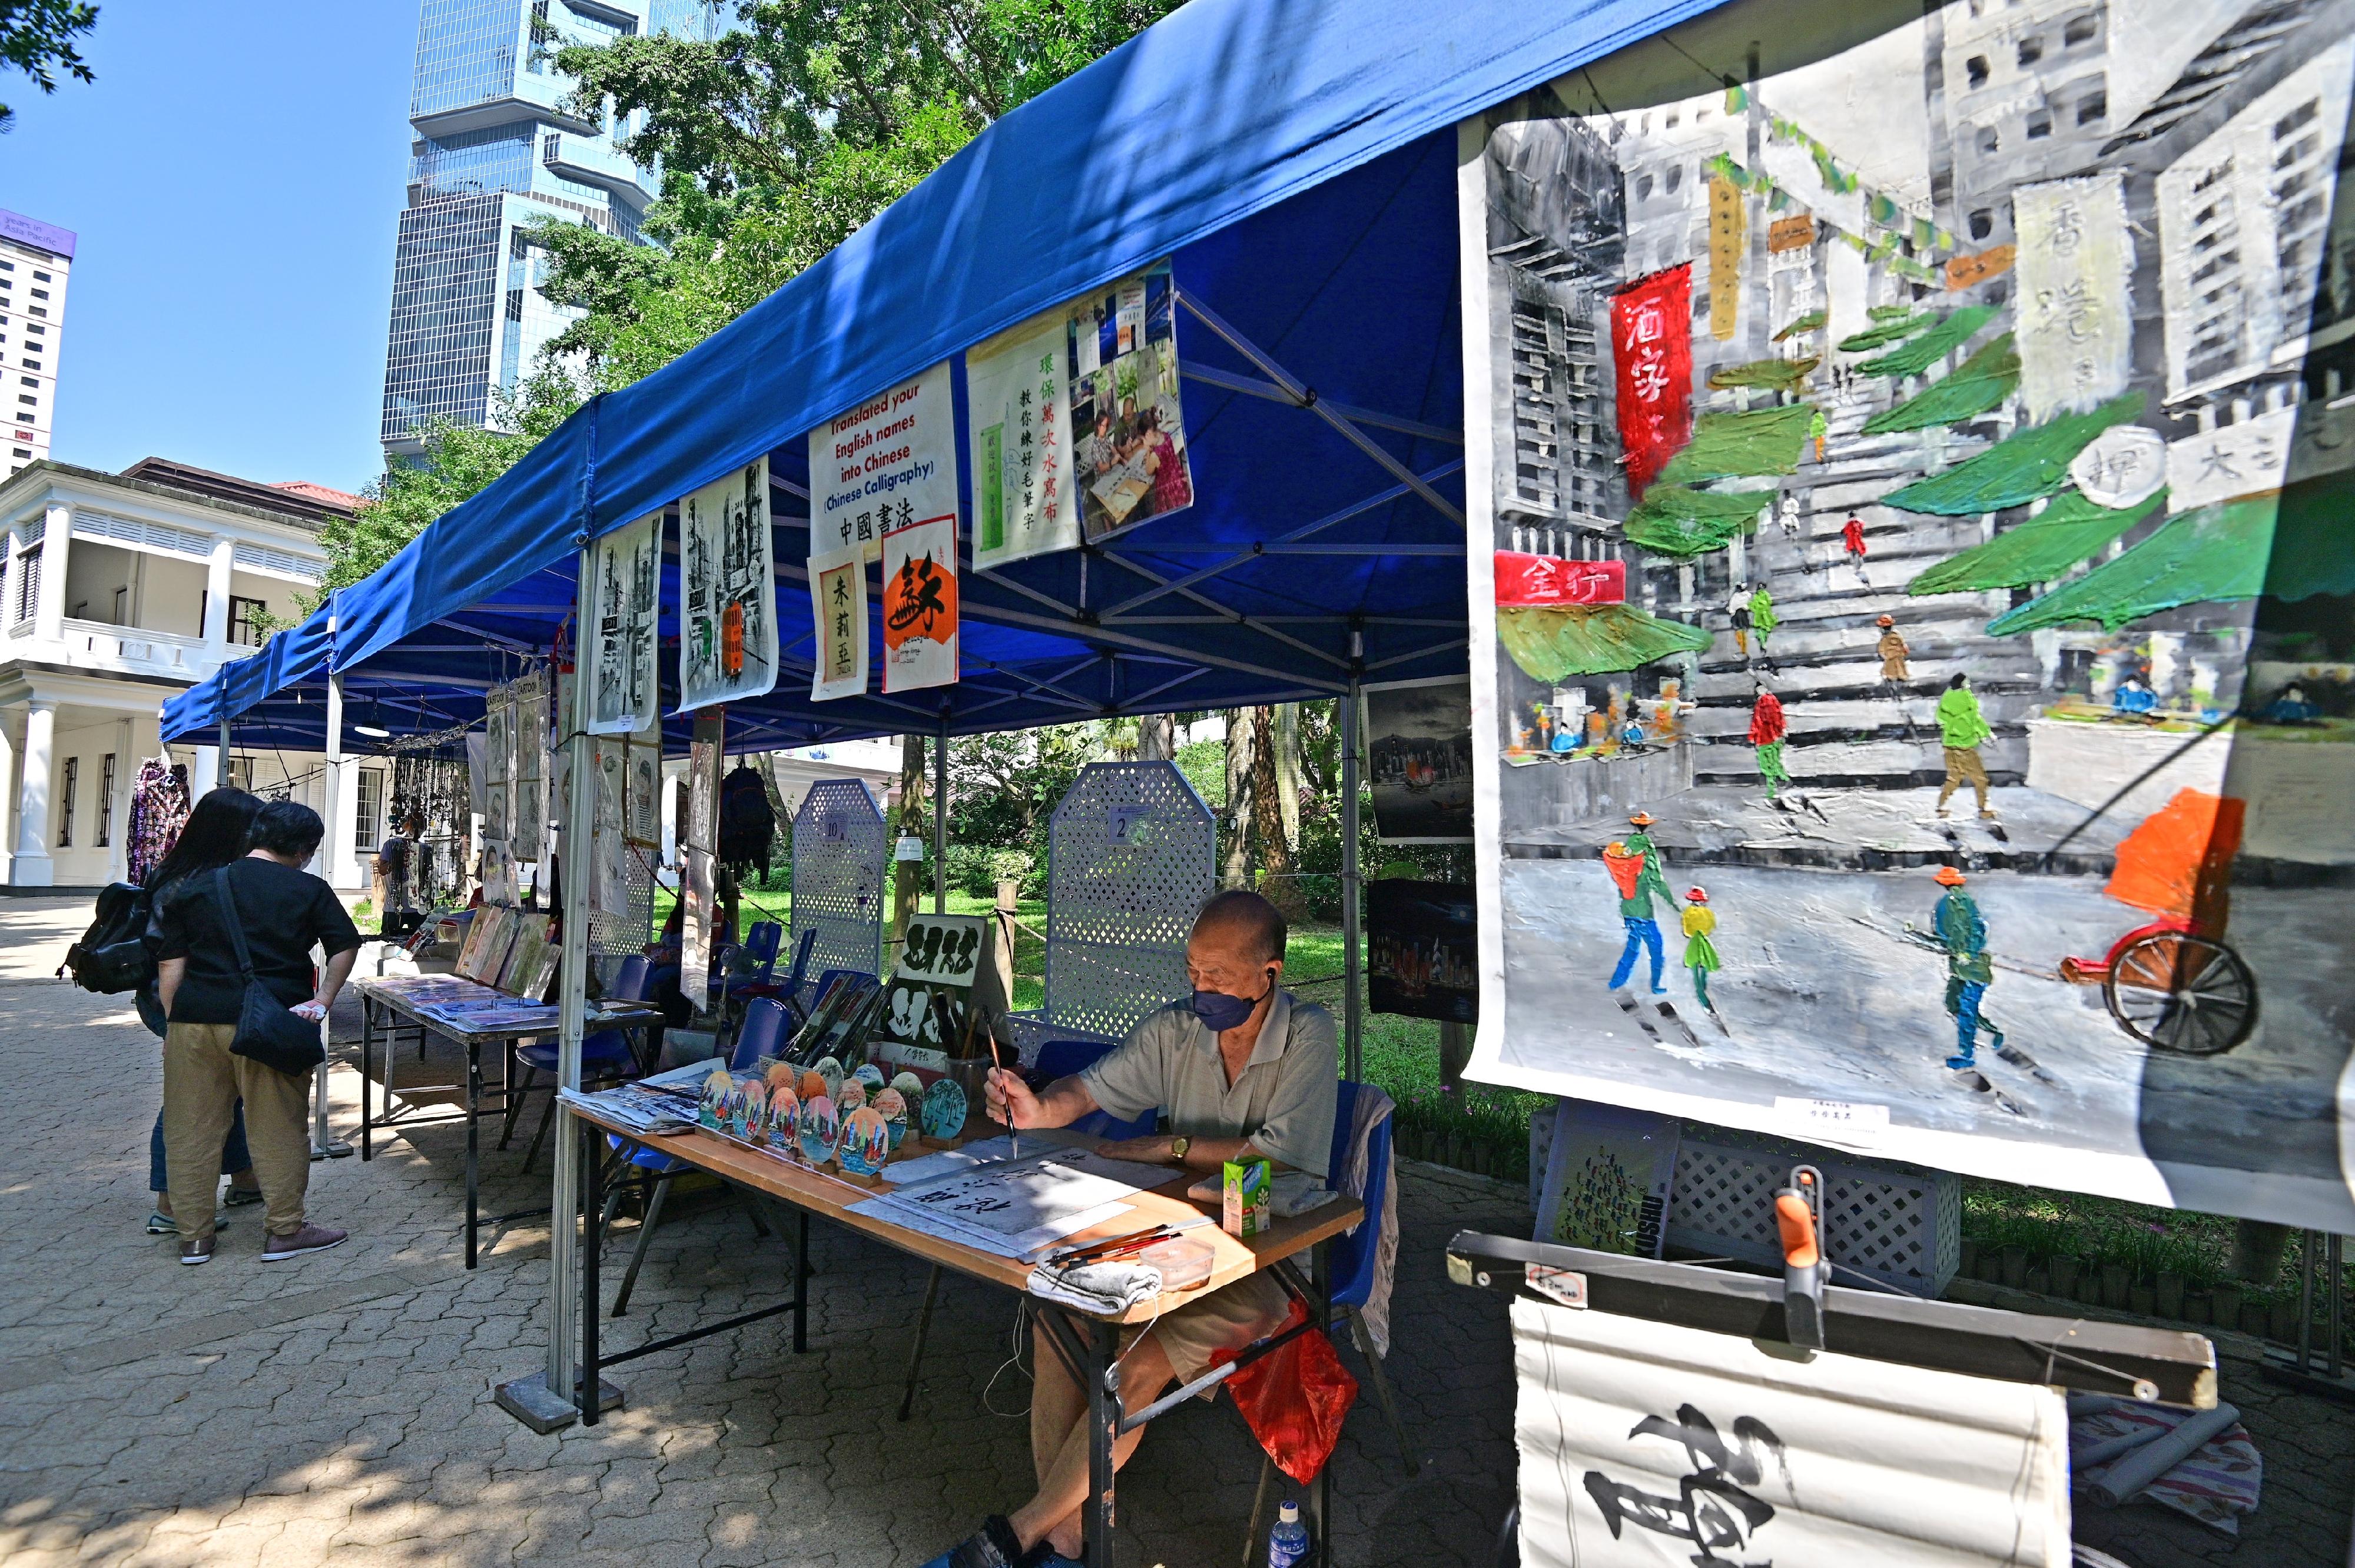 康乐及文化事务署邀请市民参与「艺趣坊」活动。活动于二○二三年一月一日至十二月三十一日期间逢星期六、日及公众假期在香港公园举行。场内设有十个摊位，展出及售卖各种精致的手工艺品，例如布艺、花艺和饰物，亦提供绘画、人像素描、书法和摄影等服务。